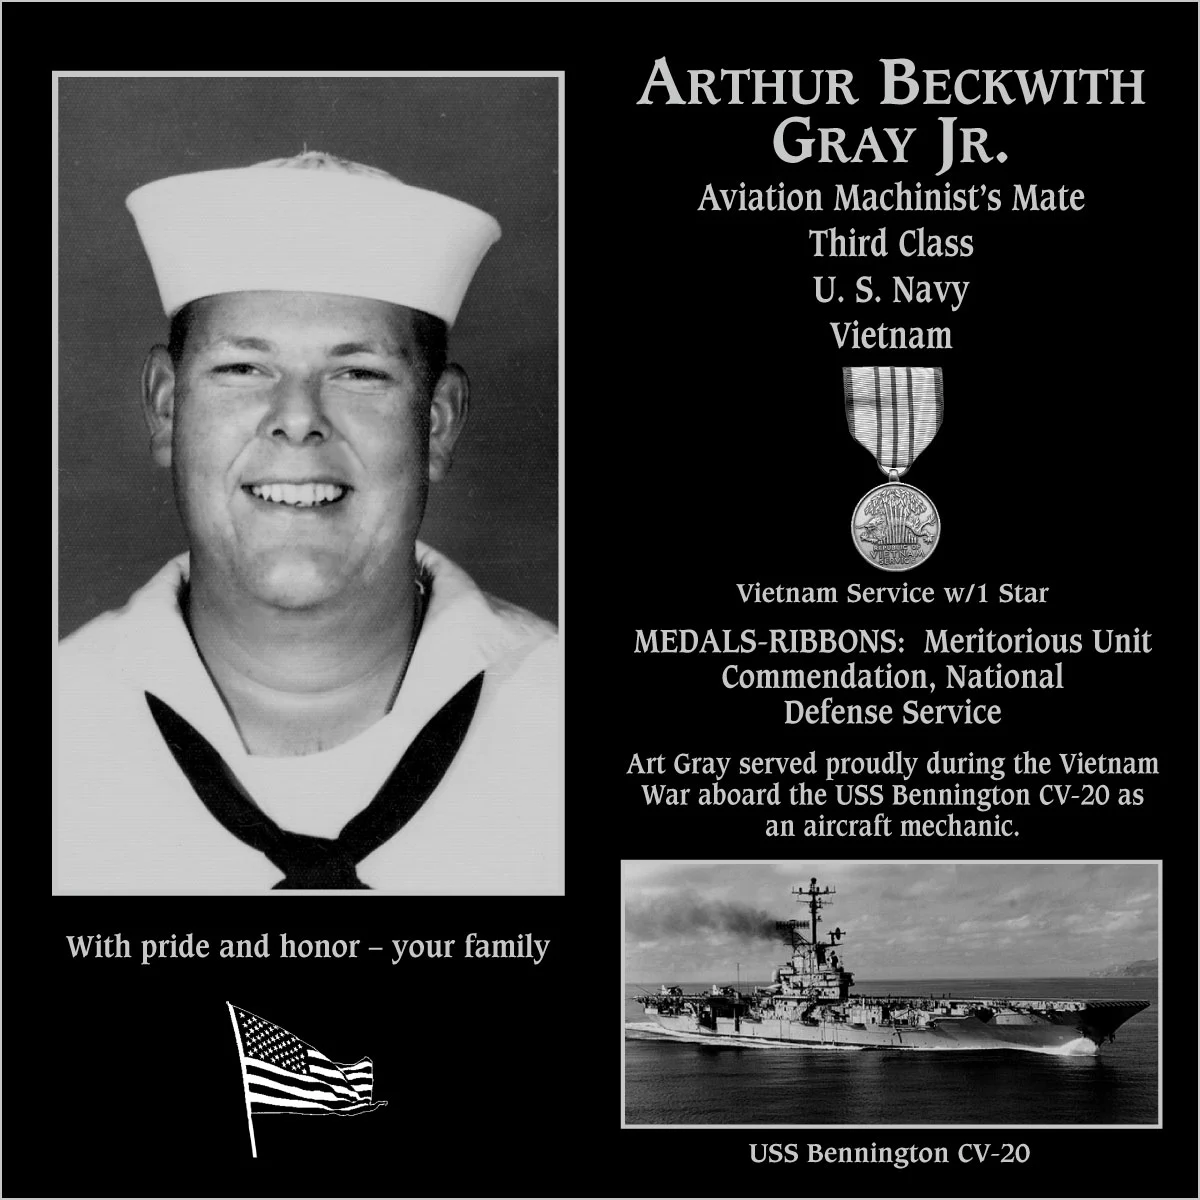 Arthur Beckwith Gray jr